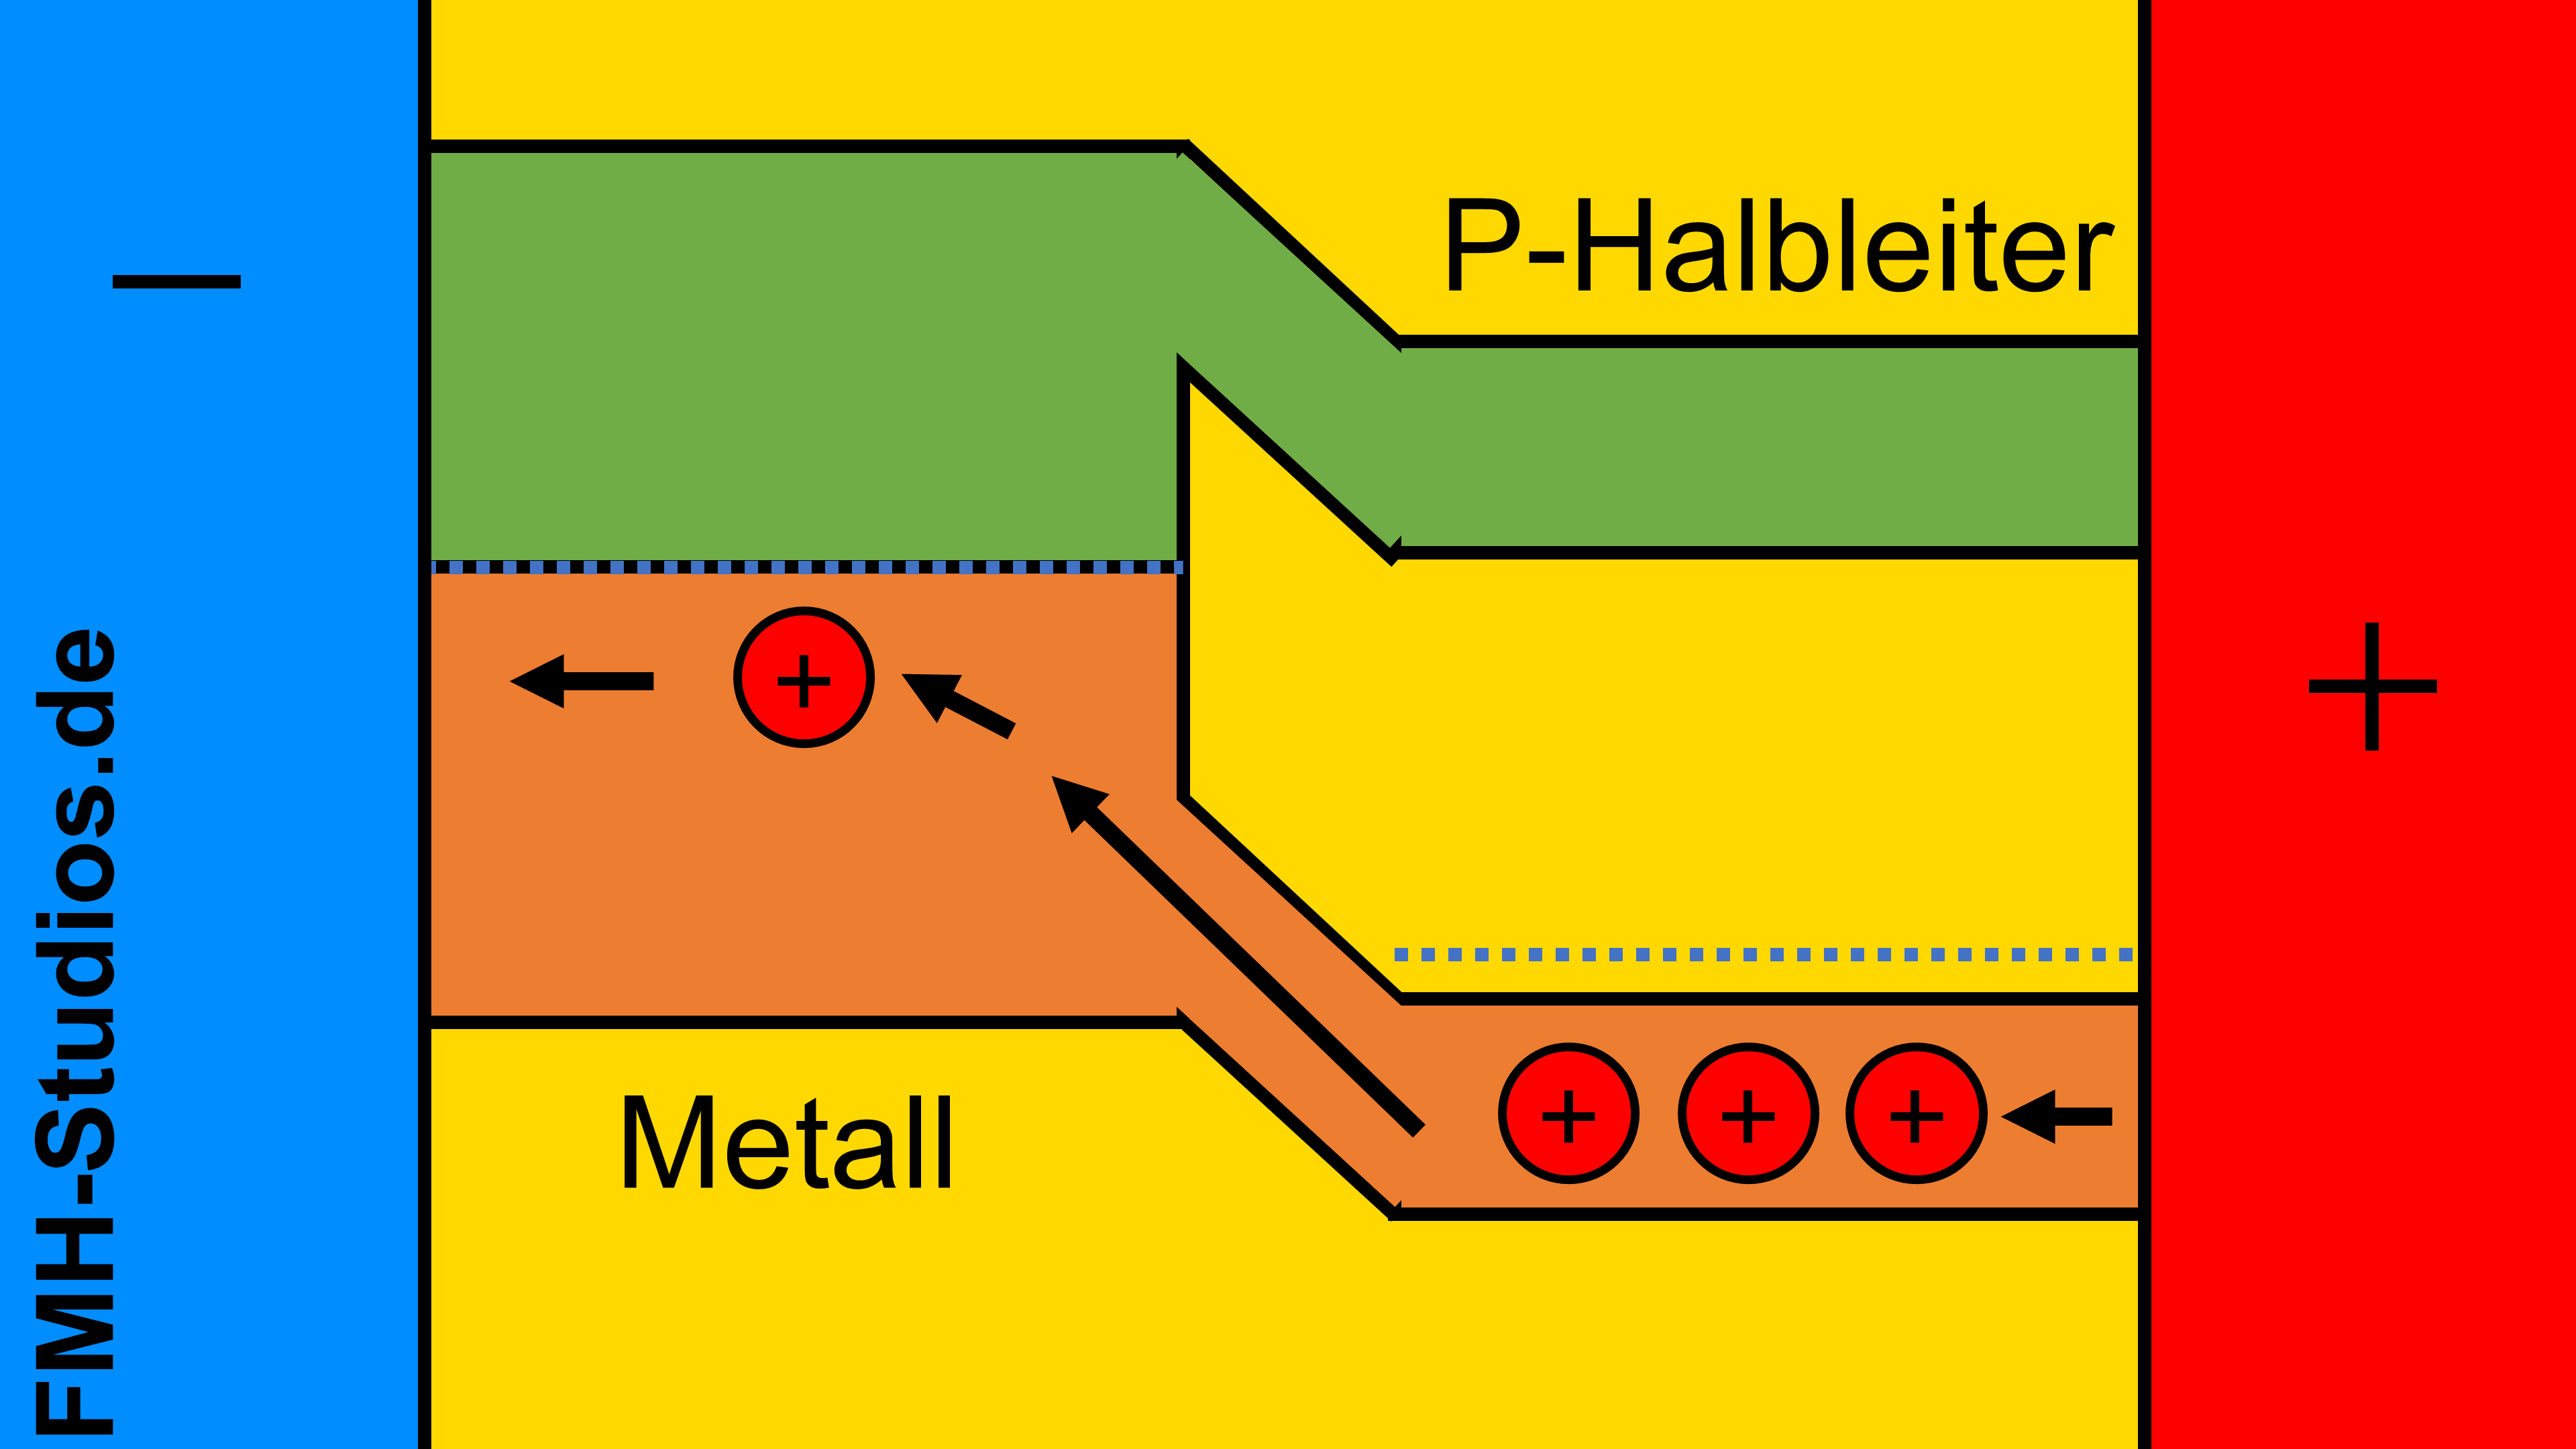 Diode - Halbleiter - PN-Übergang – Metall-Halbleiter-Übergang - Bändermodell – äußere Spannung - Spannungsquelle - Schottky-Kontakt - Flusspolung - Löcher